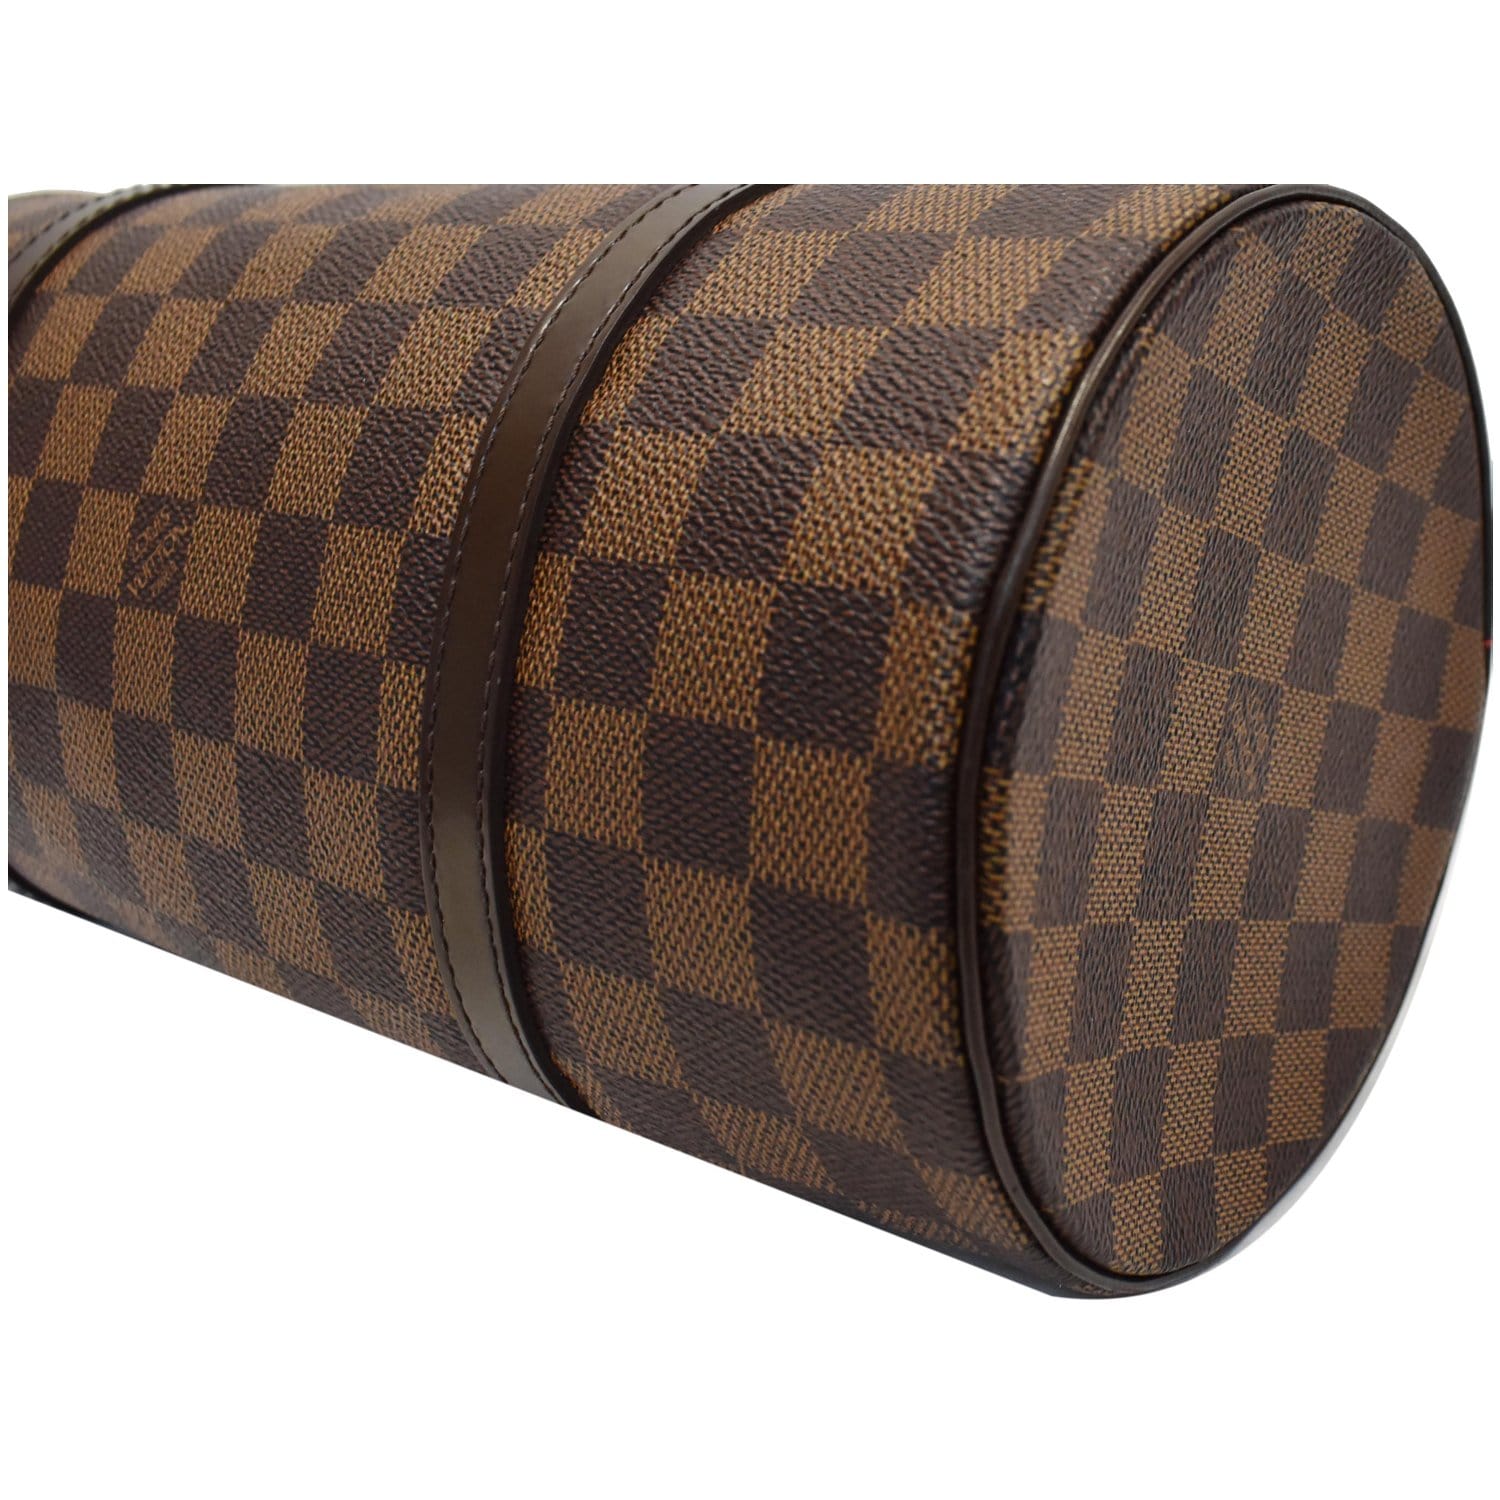 Louis Vuitton Damier Ebene Canvas Papillon 26 (Authentic Pre-Owned) -  ShopStyle Shoulder Bags